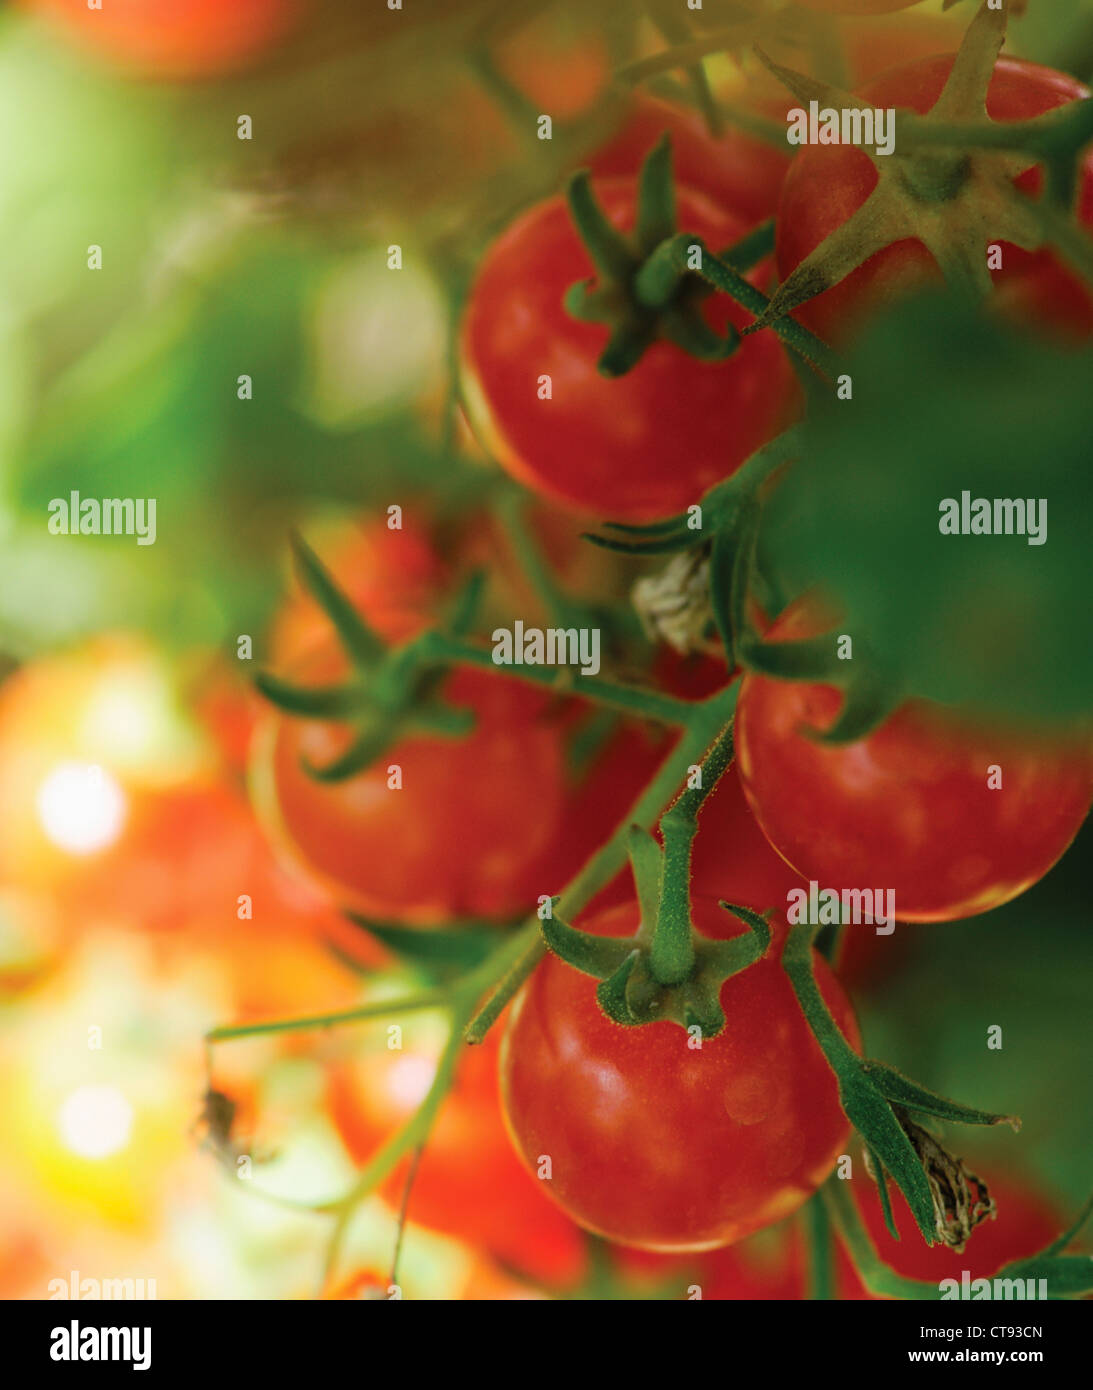 Lycopersicon esculentum, tomates, fruits rouges qui poussent sur la vigne. Banque D'Images